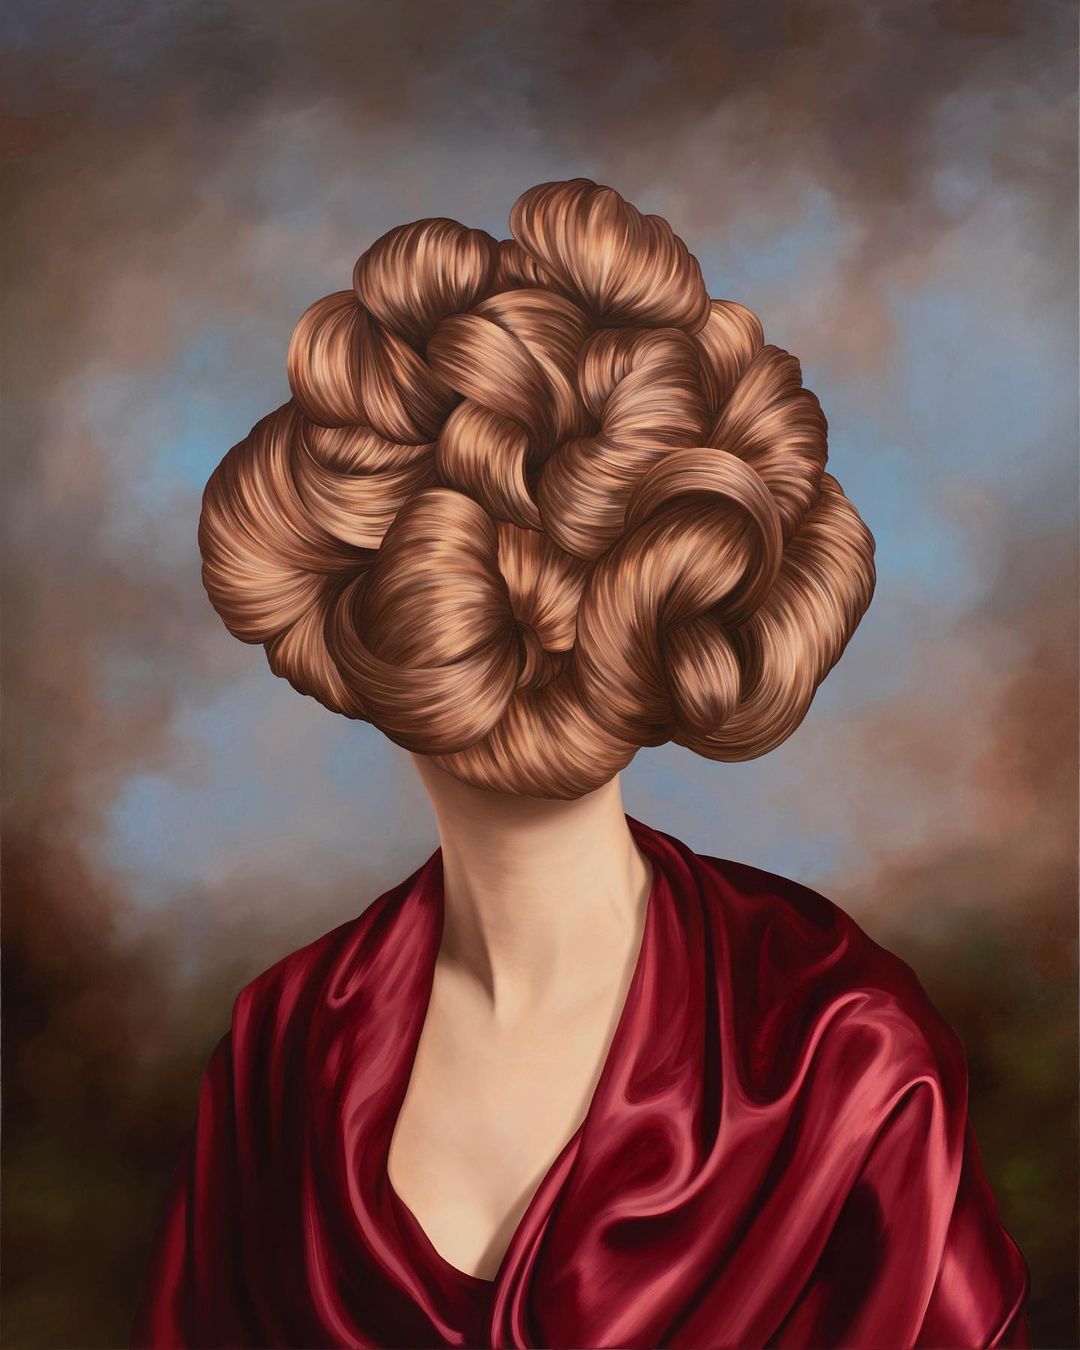 Surrealistic Reinterpretation Of The Classical Portrait Style By Ewa Juszkiewicz (12)